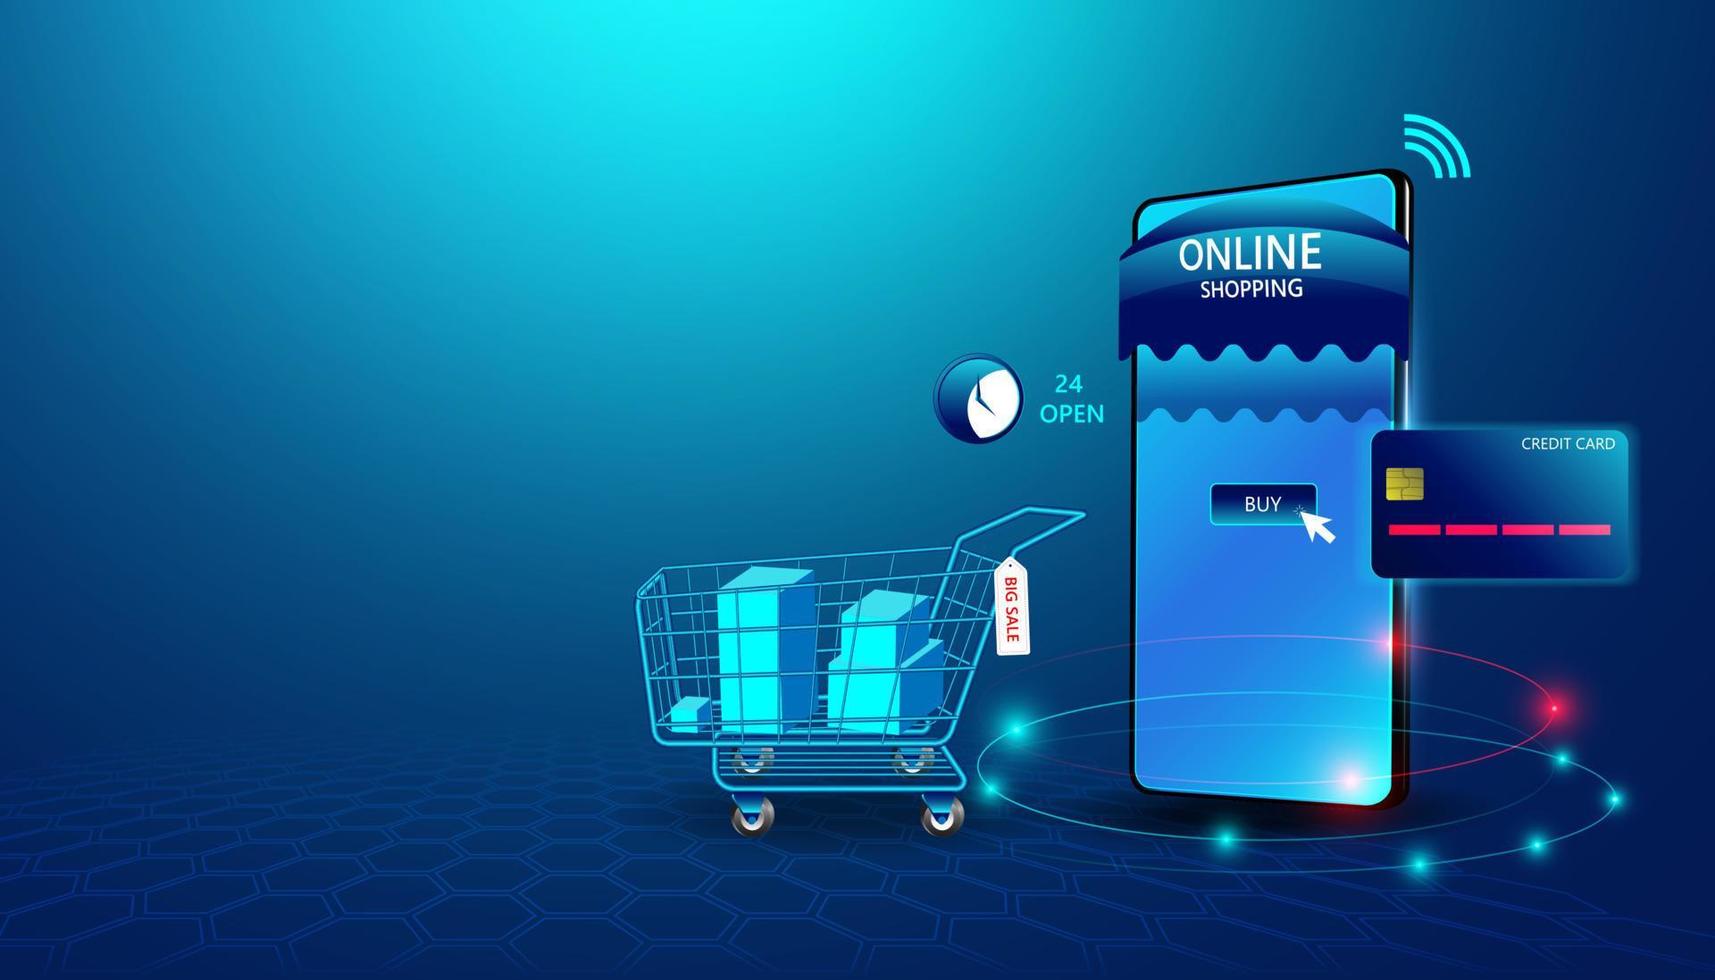 abstrakt online shopping koncept online shopping via utrustning klicka dig igenom webbplatsen. och betala med kreditkort modern innovation i utgifterna för människor på internet vektor